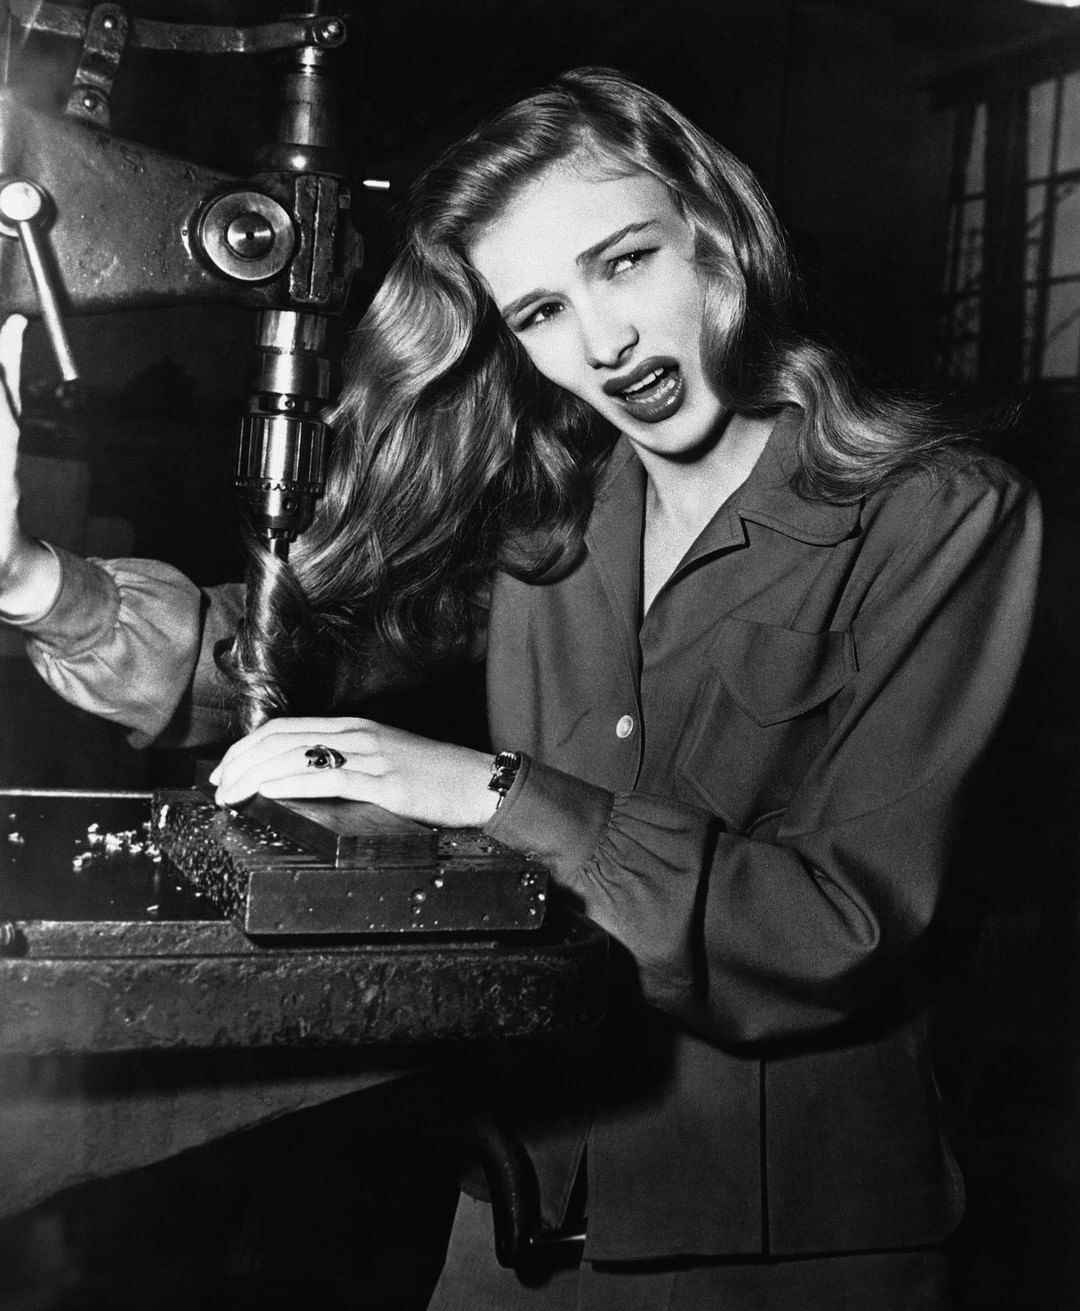 L’actrice Veronica Lake avec ses cheveux tordus dans une perceuse à colonne, démontrant les dangers potentiels pour les femmes dans les usines pendant la Seconde Guerre mondiale. Novembre 1943